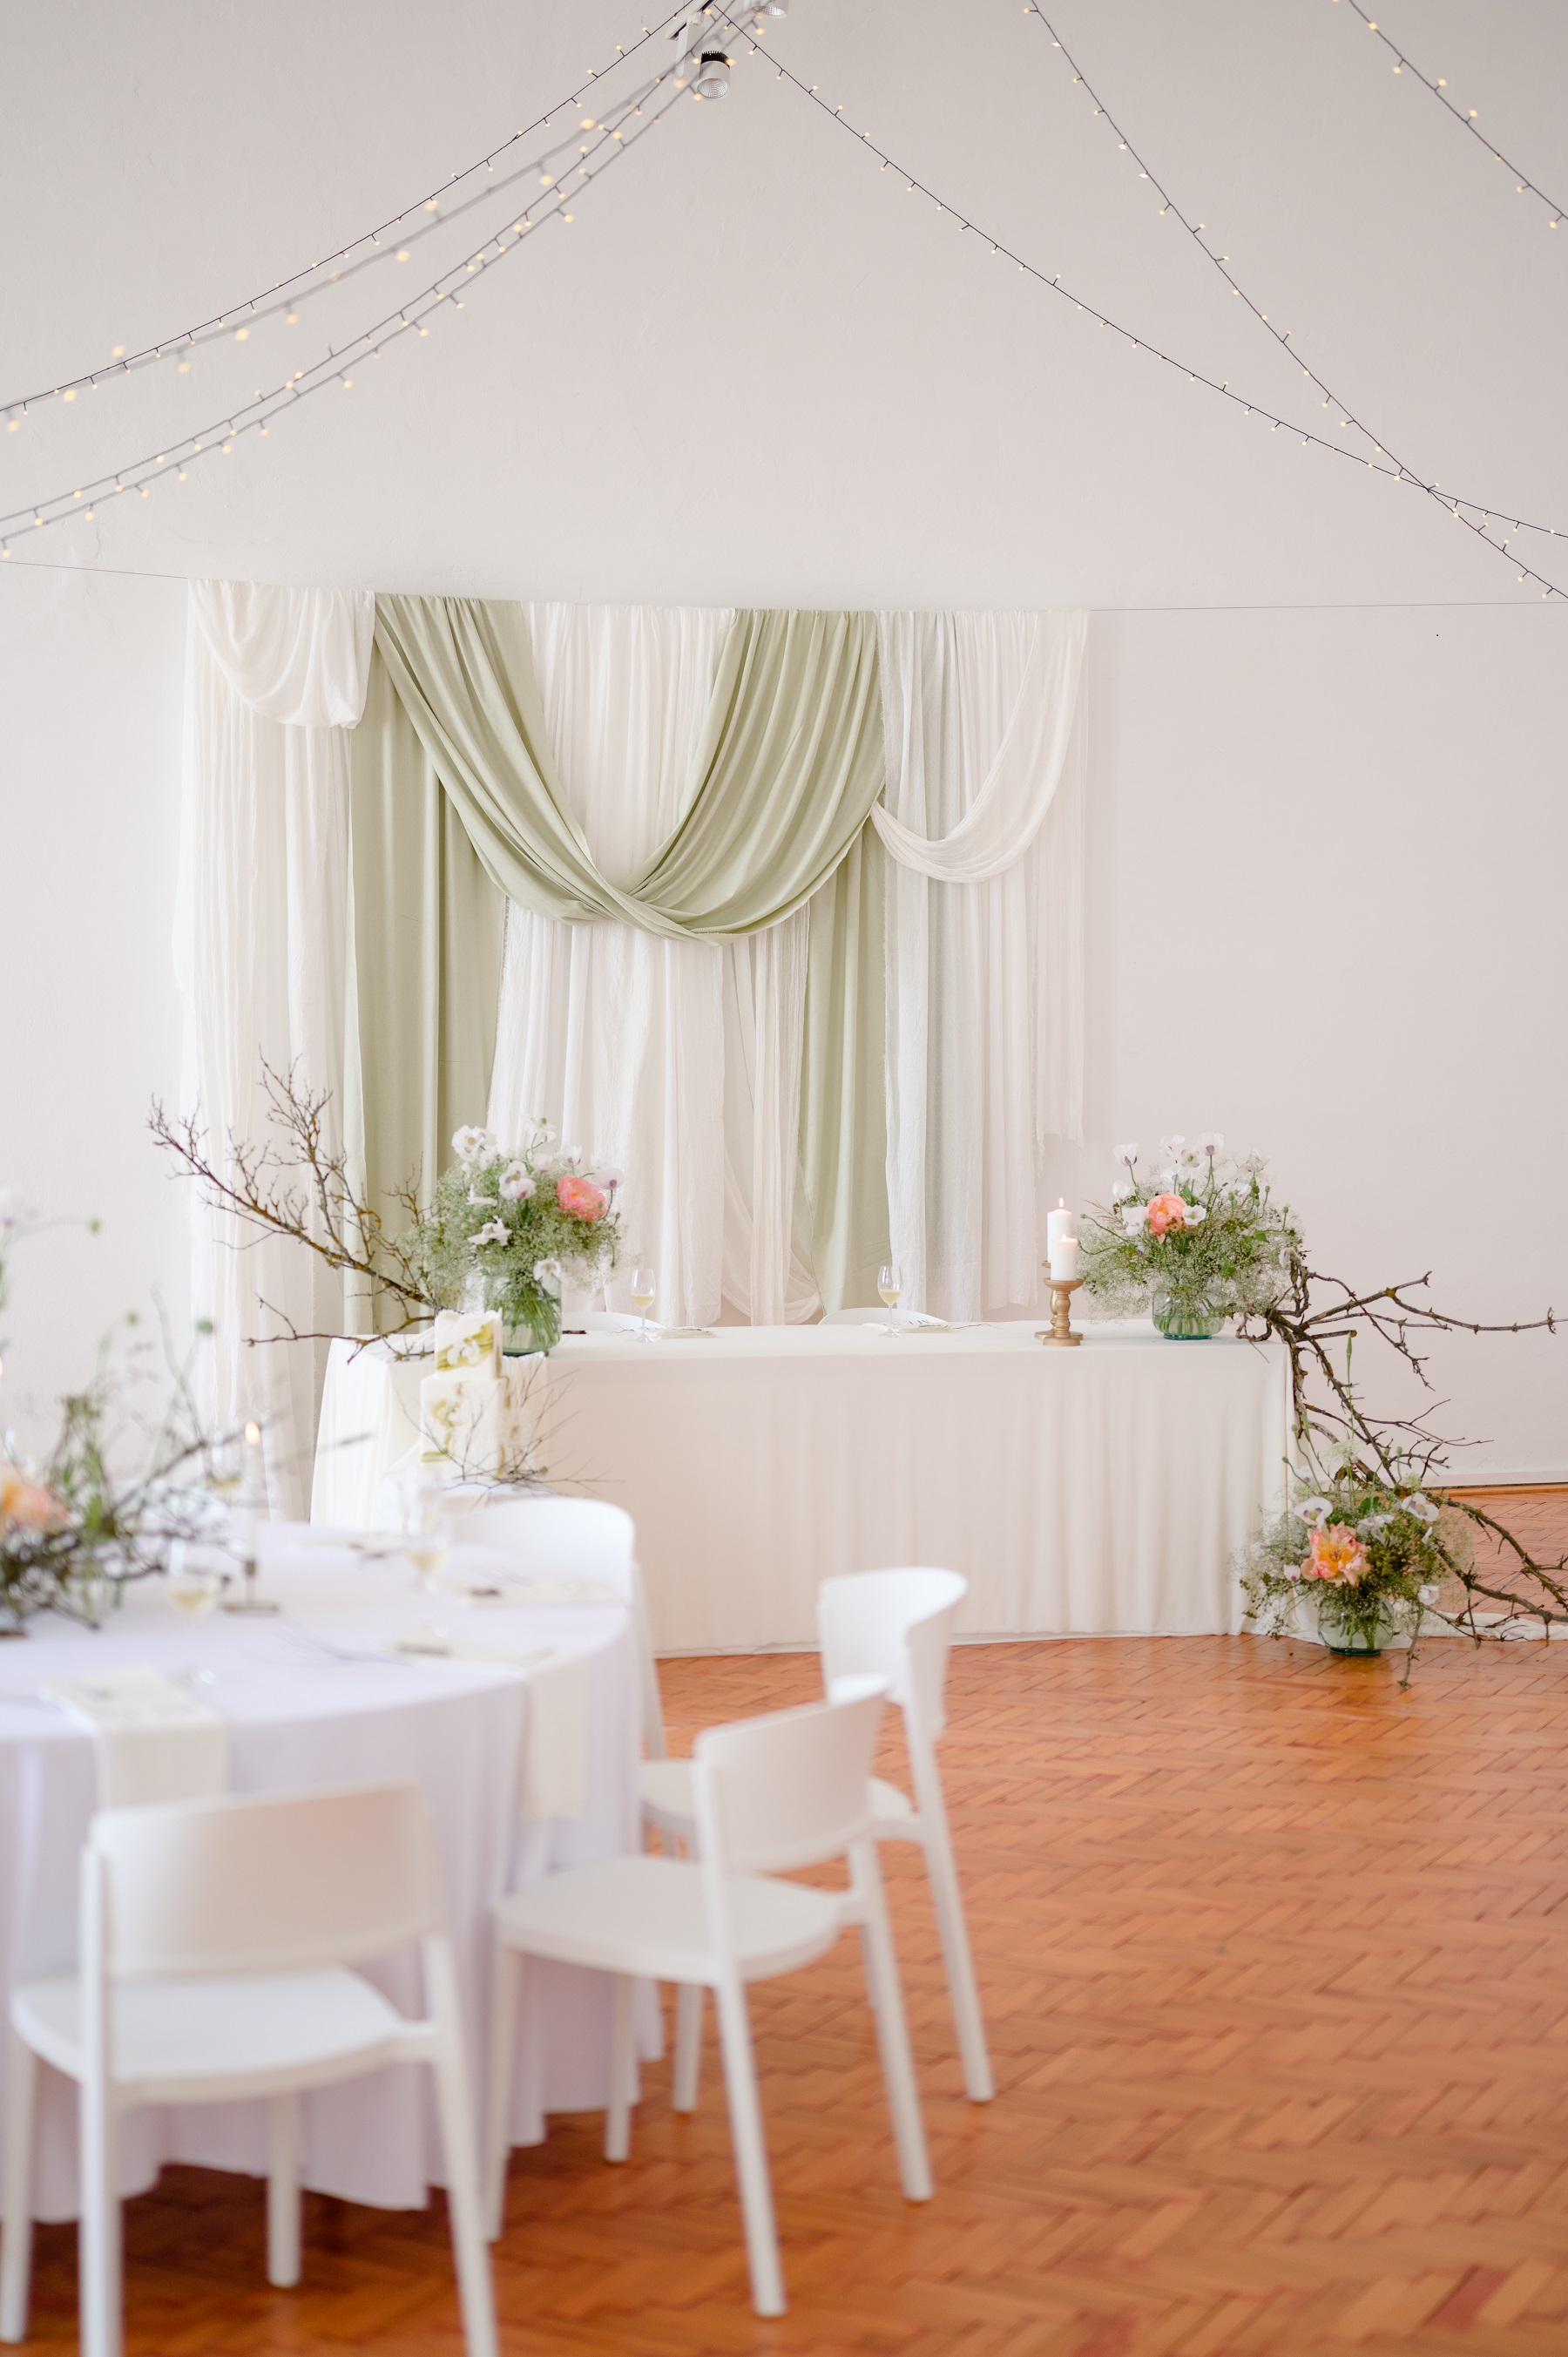 vyzdobený sál svatební hostiny v Louckém klášteře Znojmo